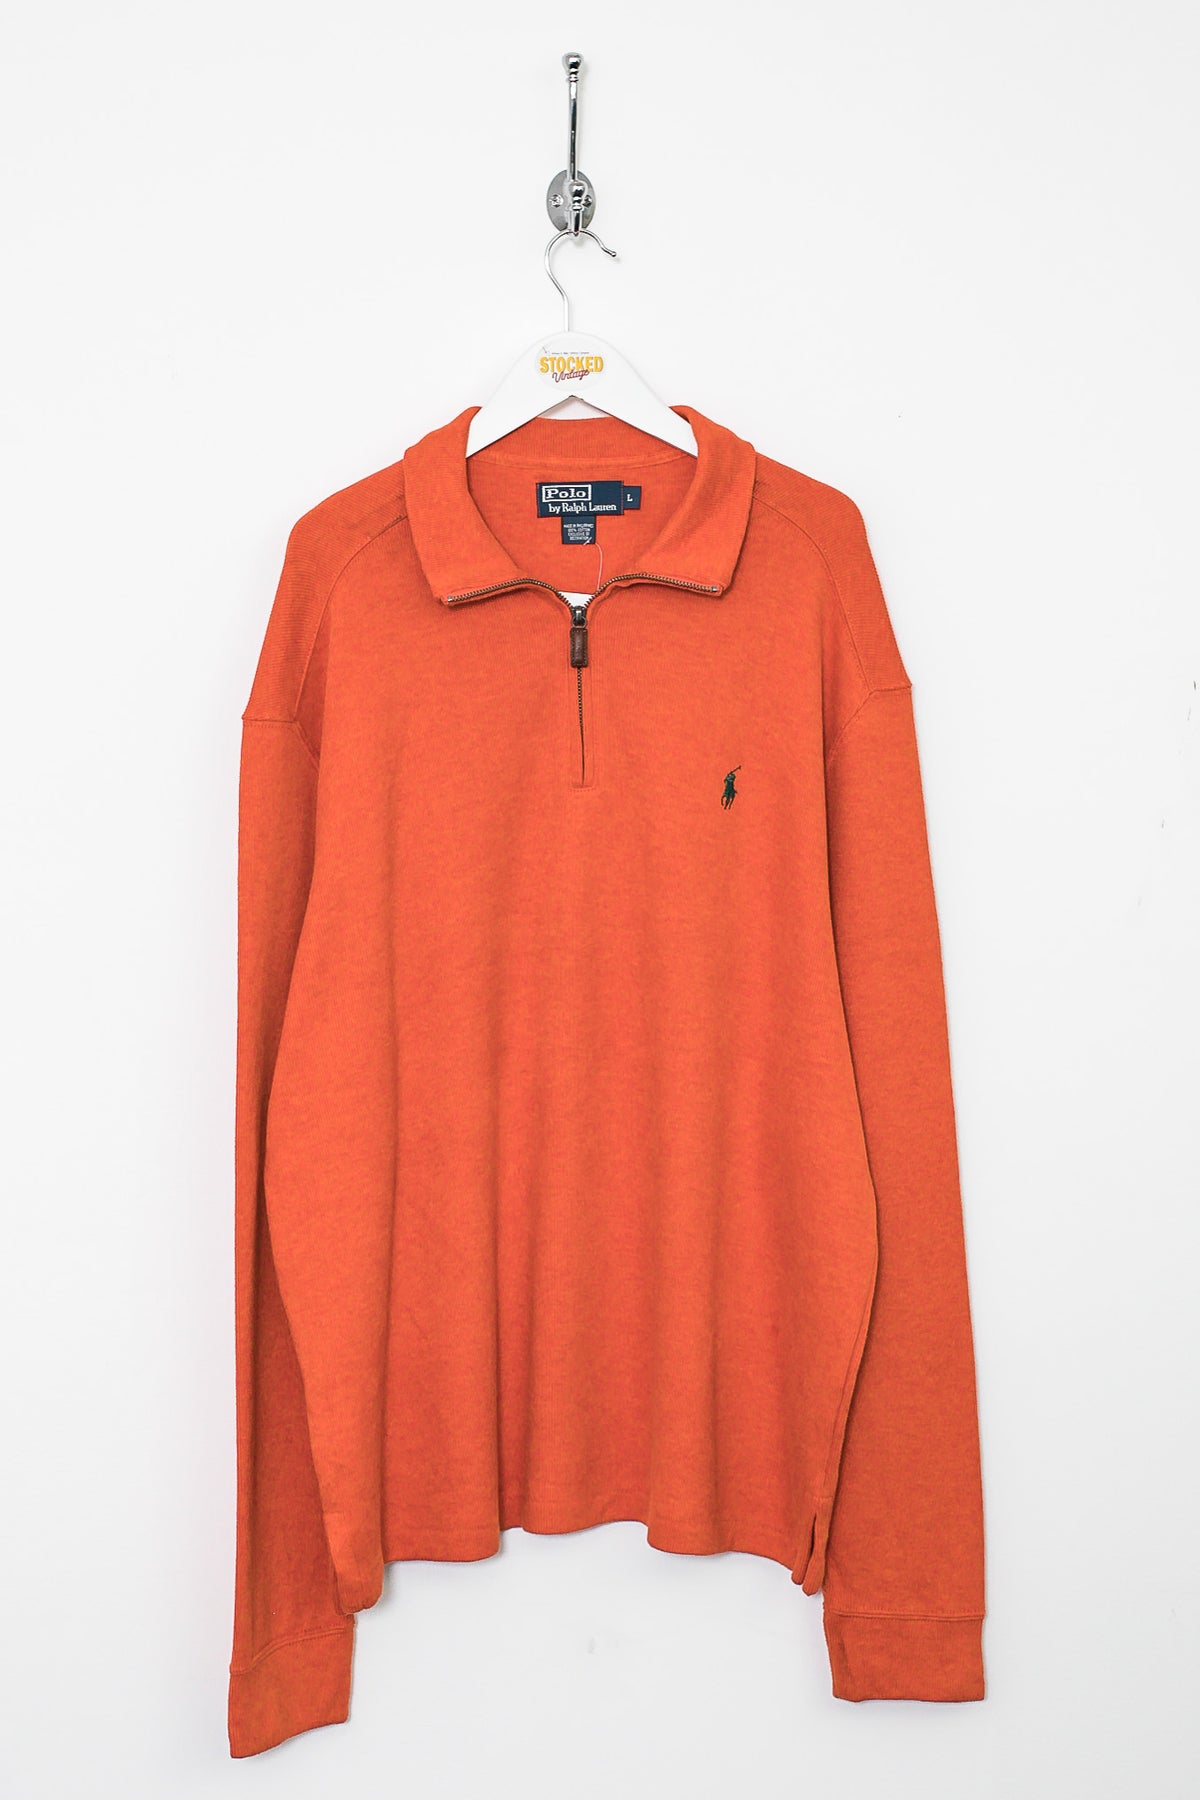 Ralph Lauren 1/4 Zip Sweatshirt (XL)